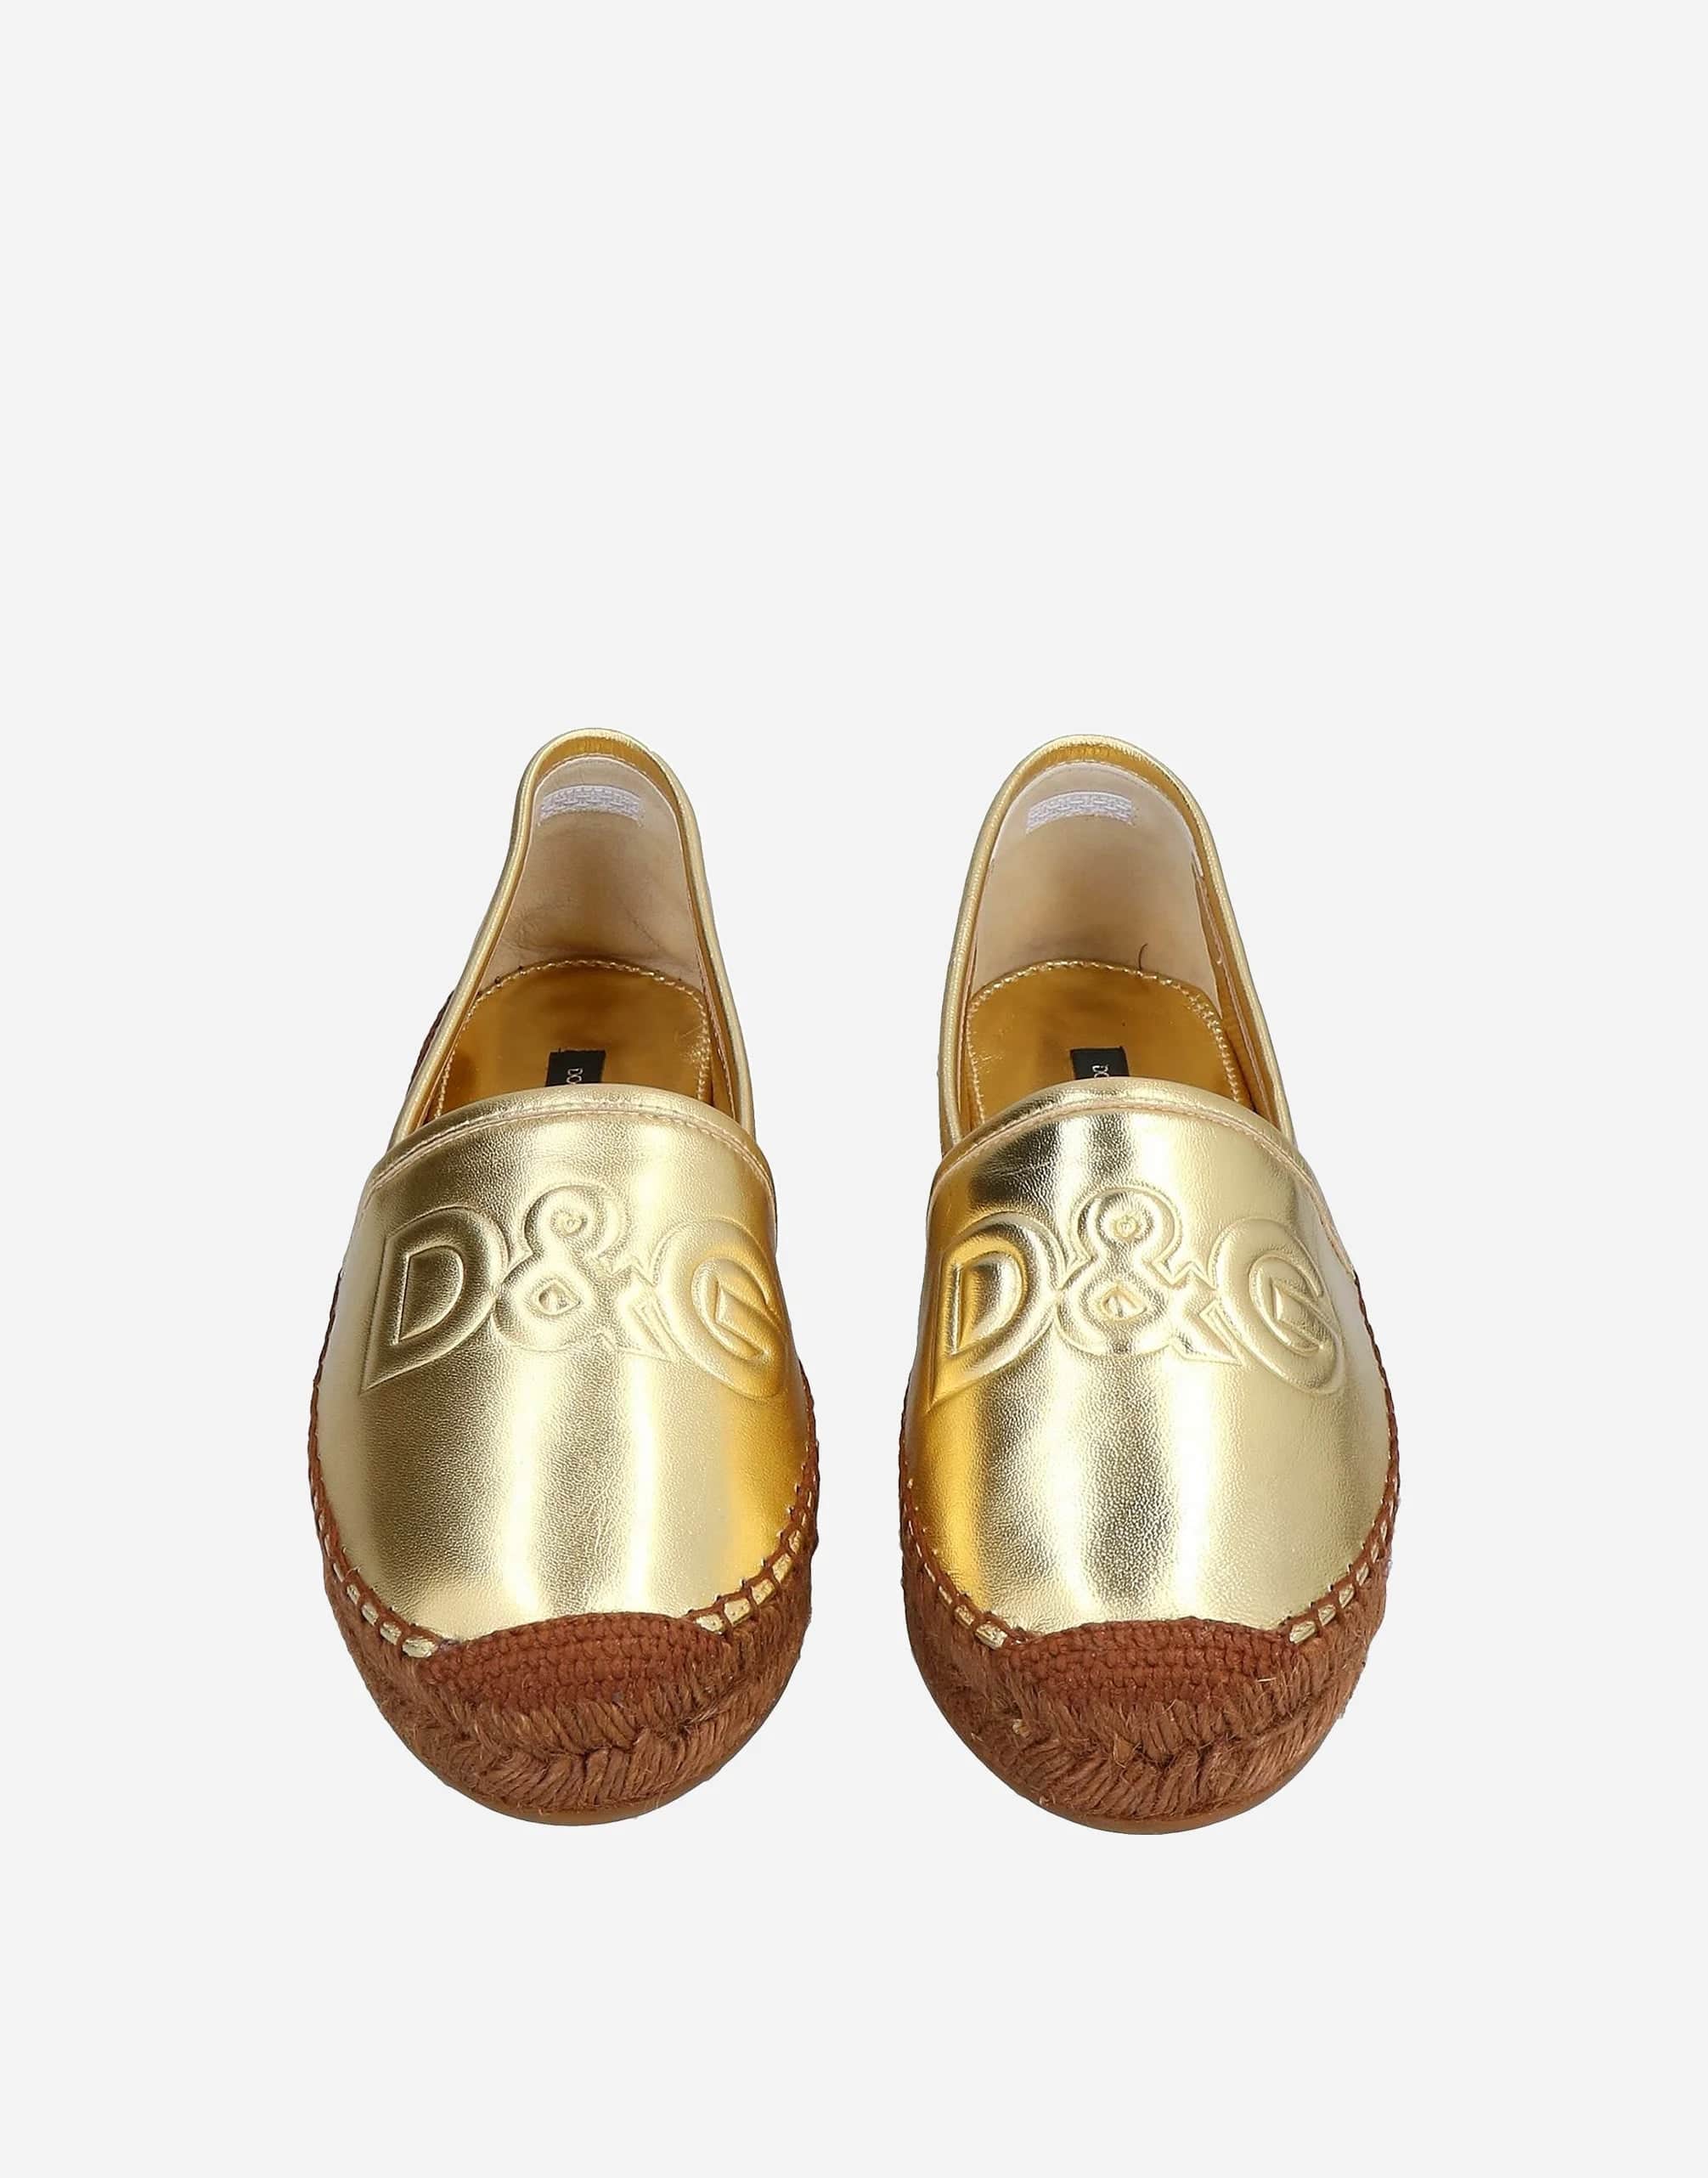 Dolce & Gabbana D&G Espadrille Flats